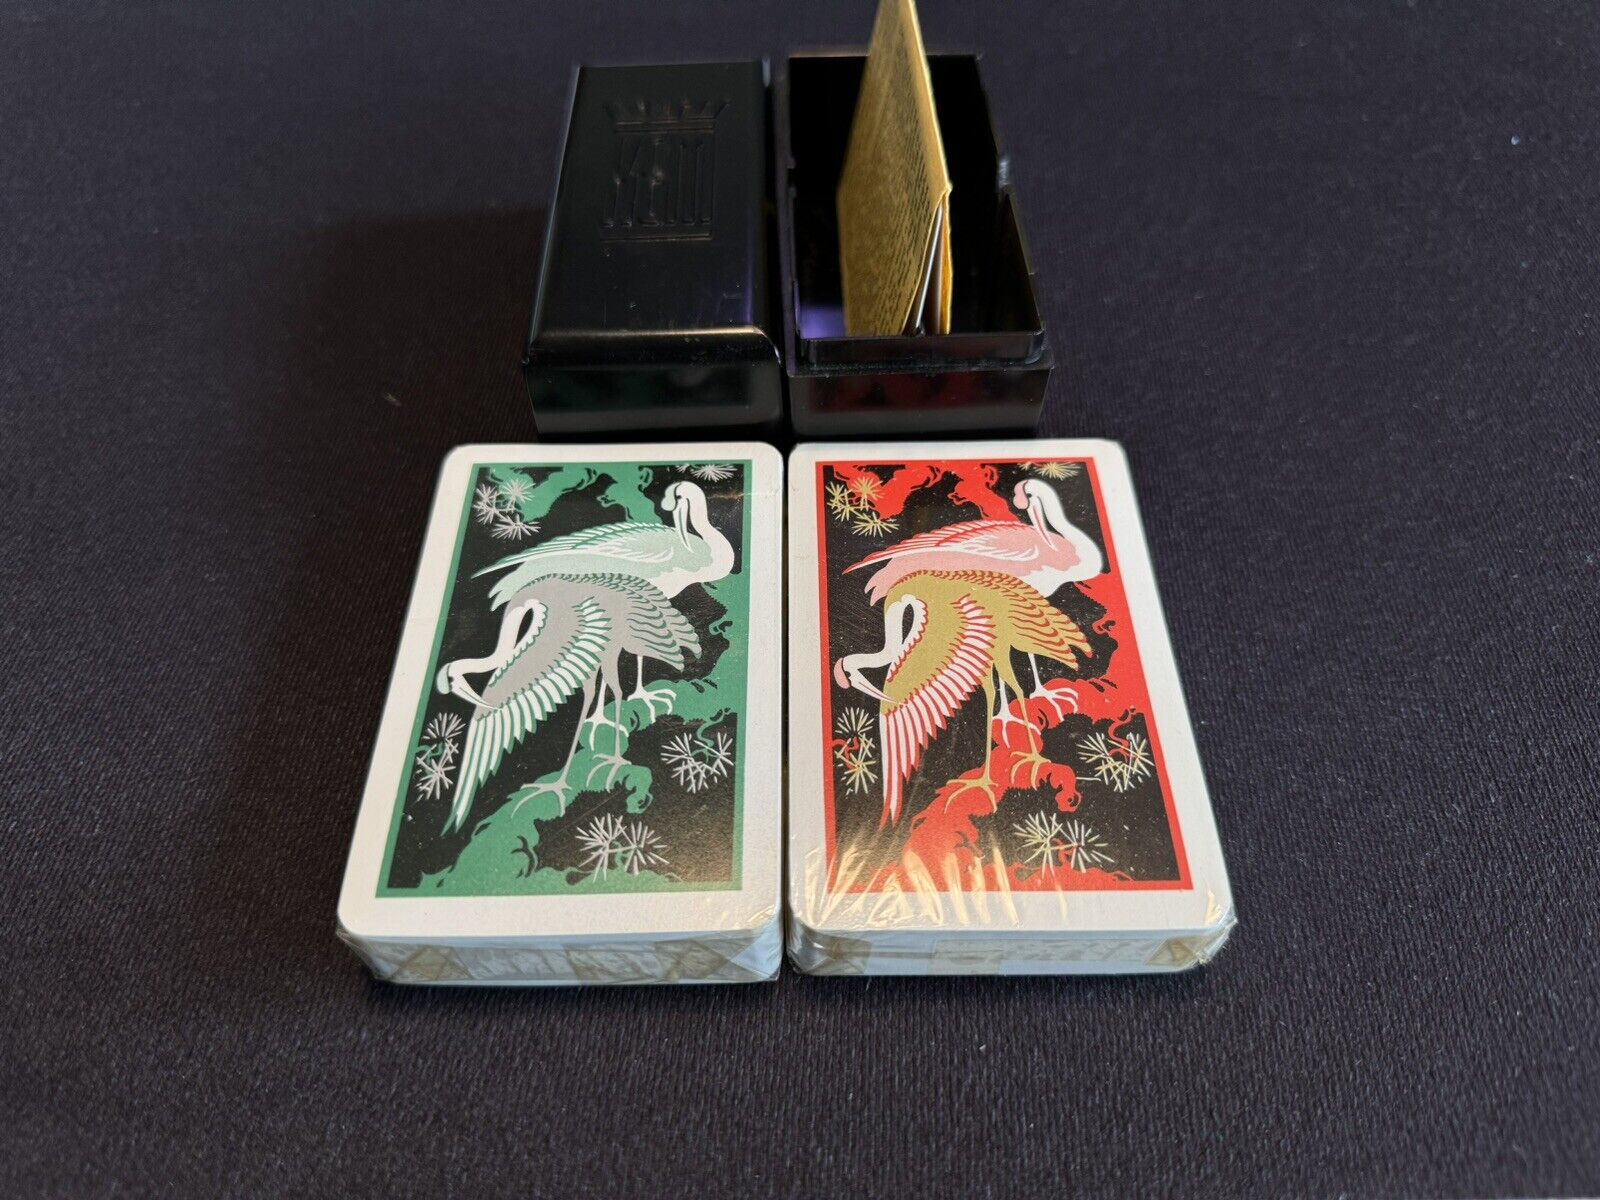 New/Sealed Vintage KEM Playing Cards “Flamingo” Full Set